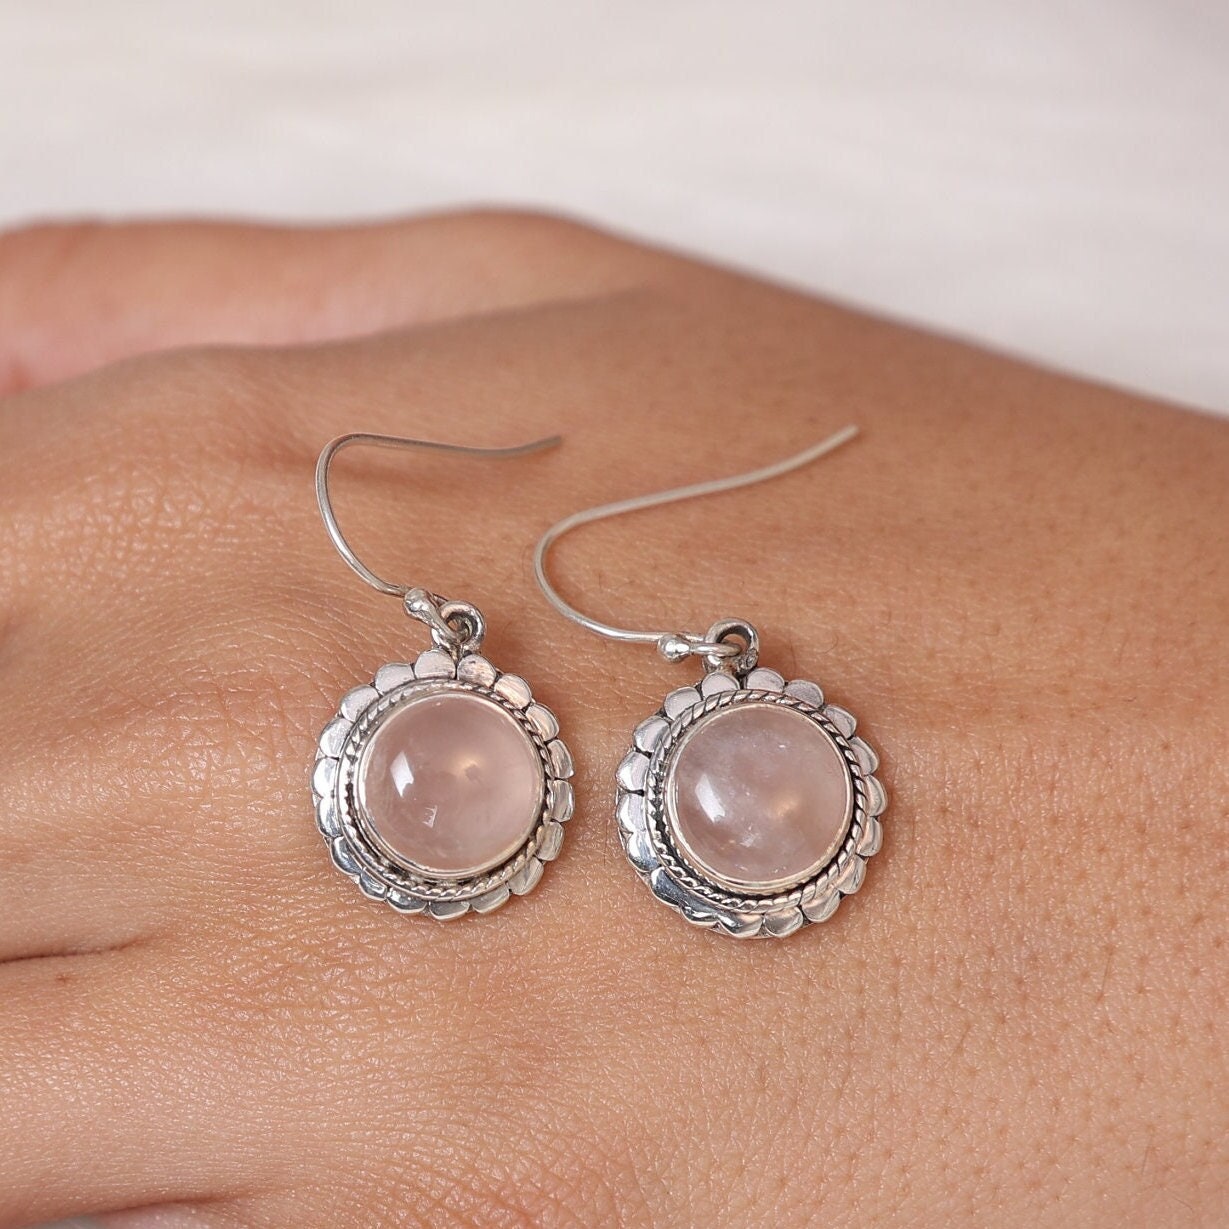 Rose Quartz Earrings, 925 Sterling Silver Earrings, January Birthstone Earrings, Dangle Gemstone Earrings, Handmade Jewelry Earrings